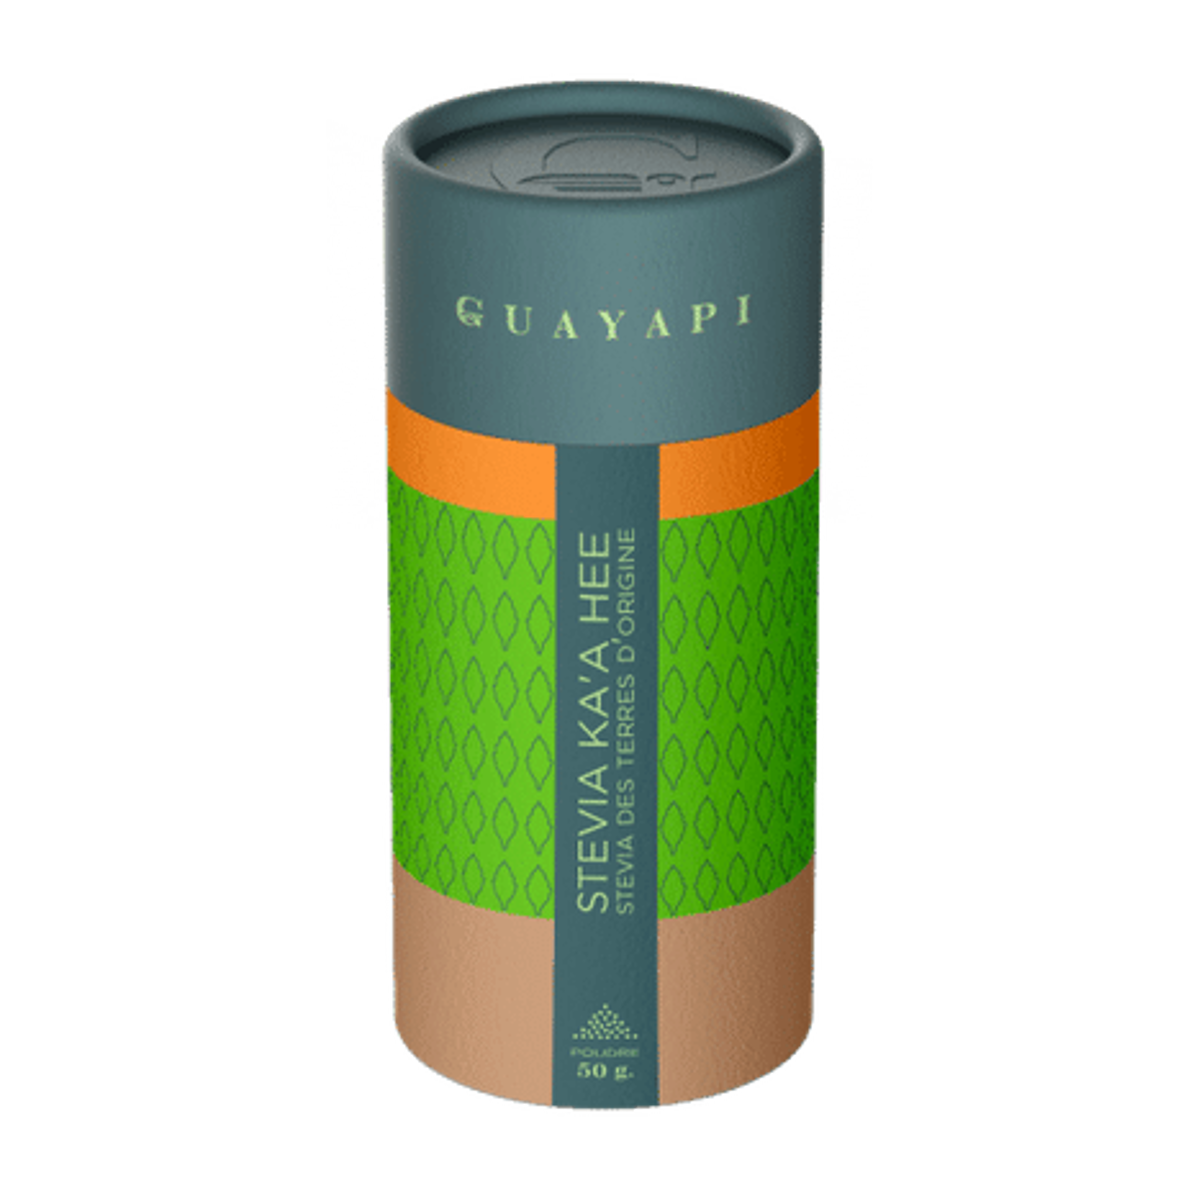 Stevia édulcorant - 400 comprimés - Guayapi 